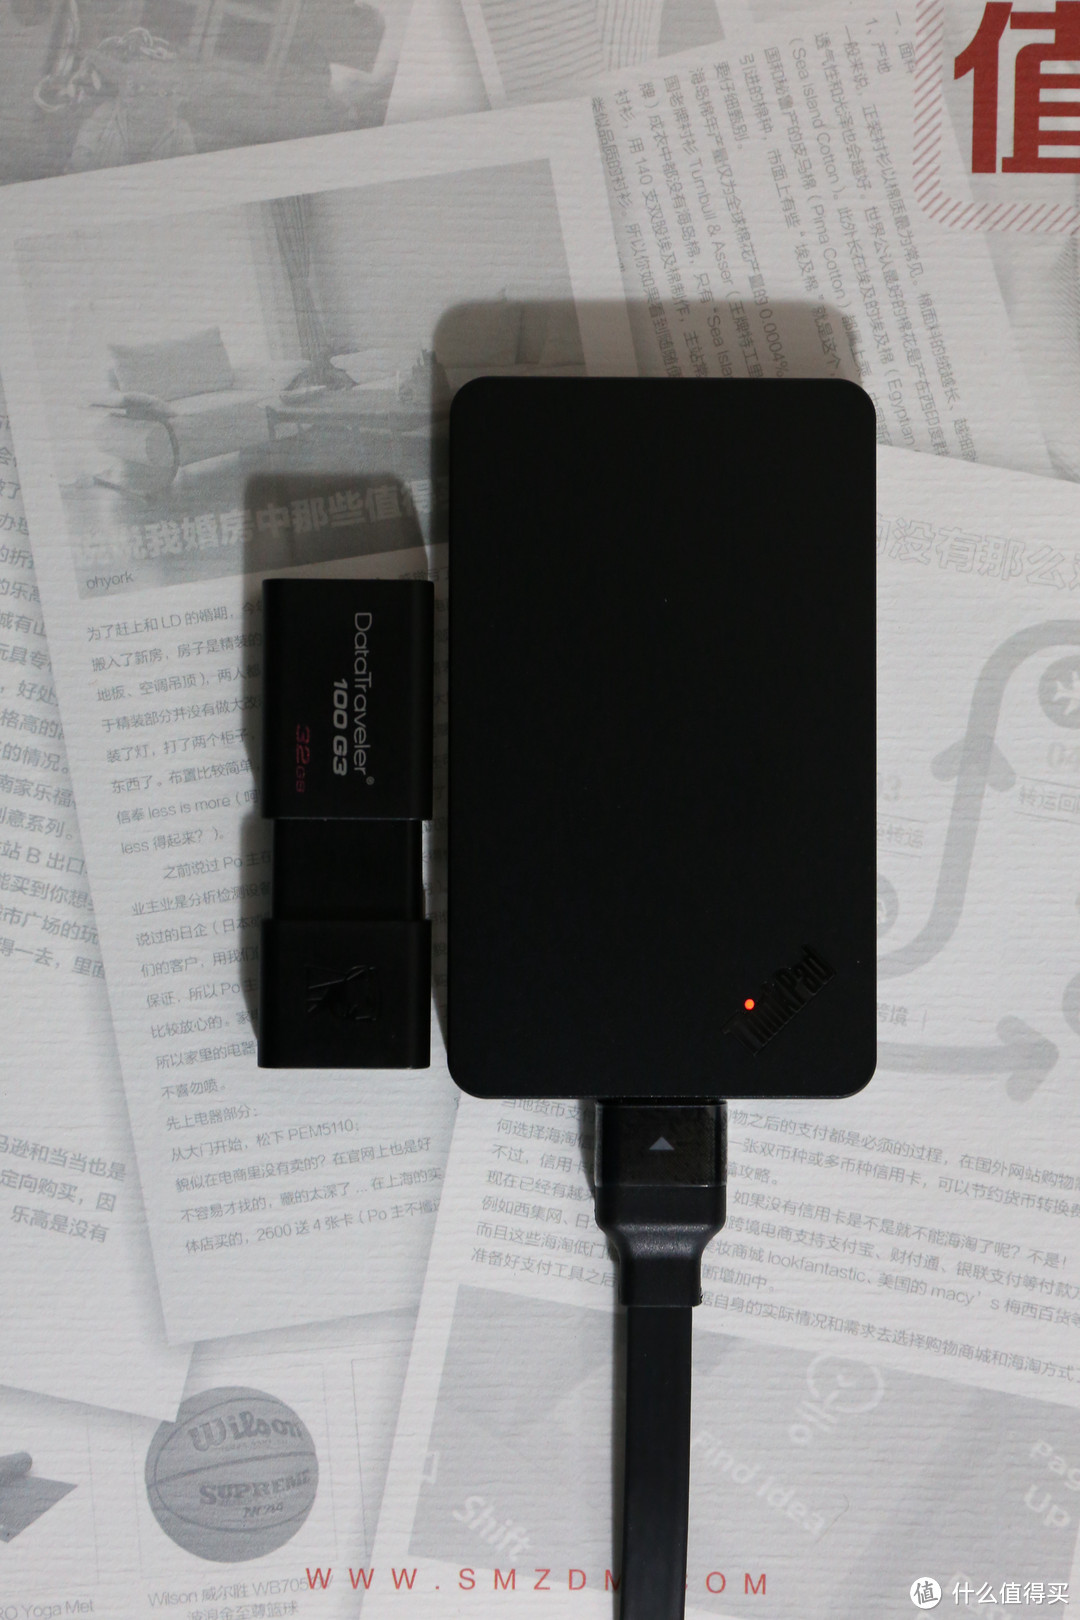 ThinkPad 便携式 SSD 固态硬盘 TS900